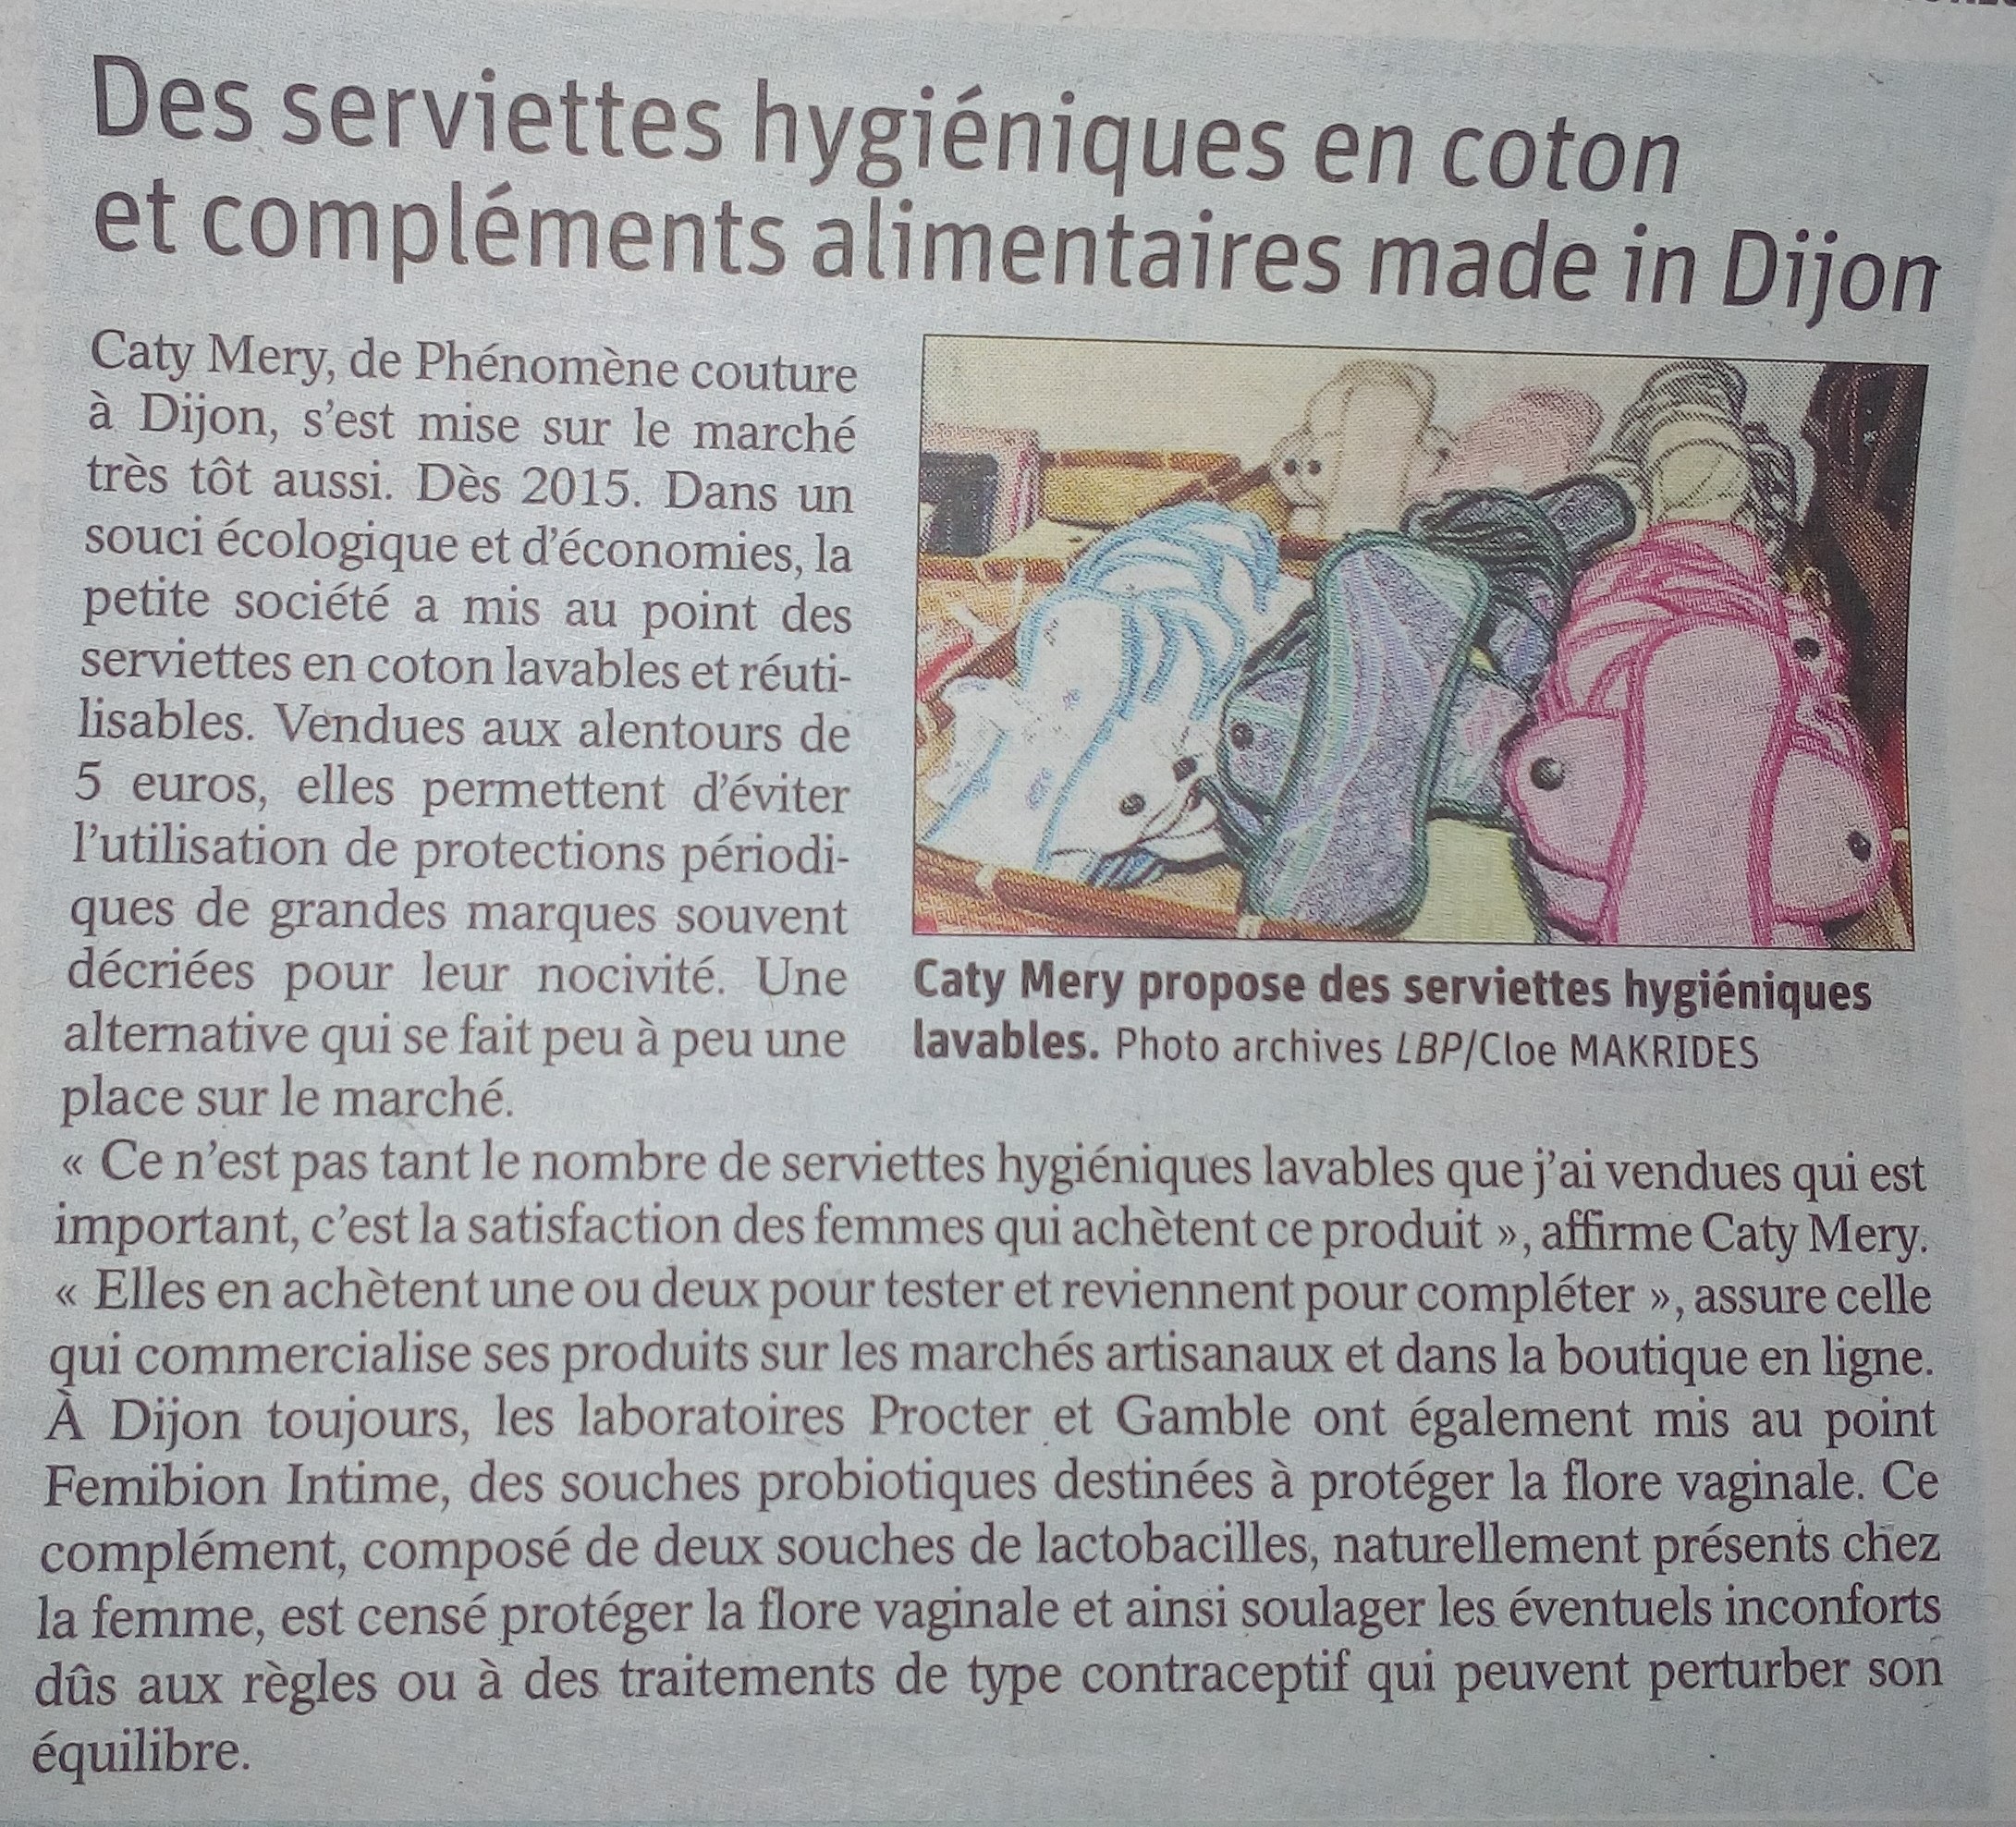 Le bien public parle des serviettes hygiéniques lavables fabriquées à Dijon par Phénomène Couture